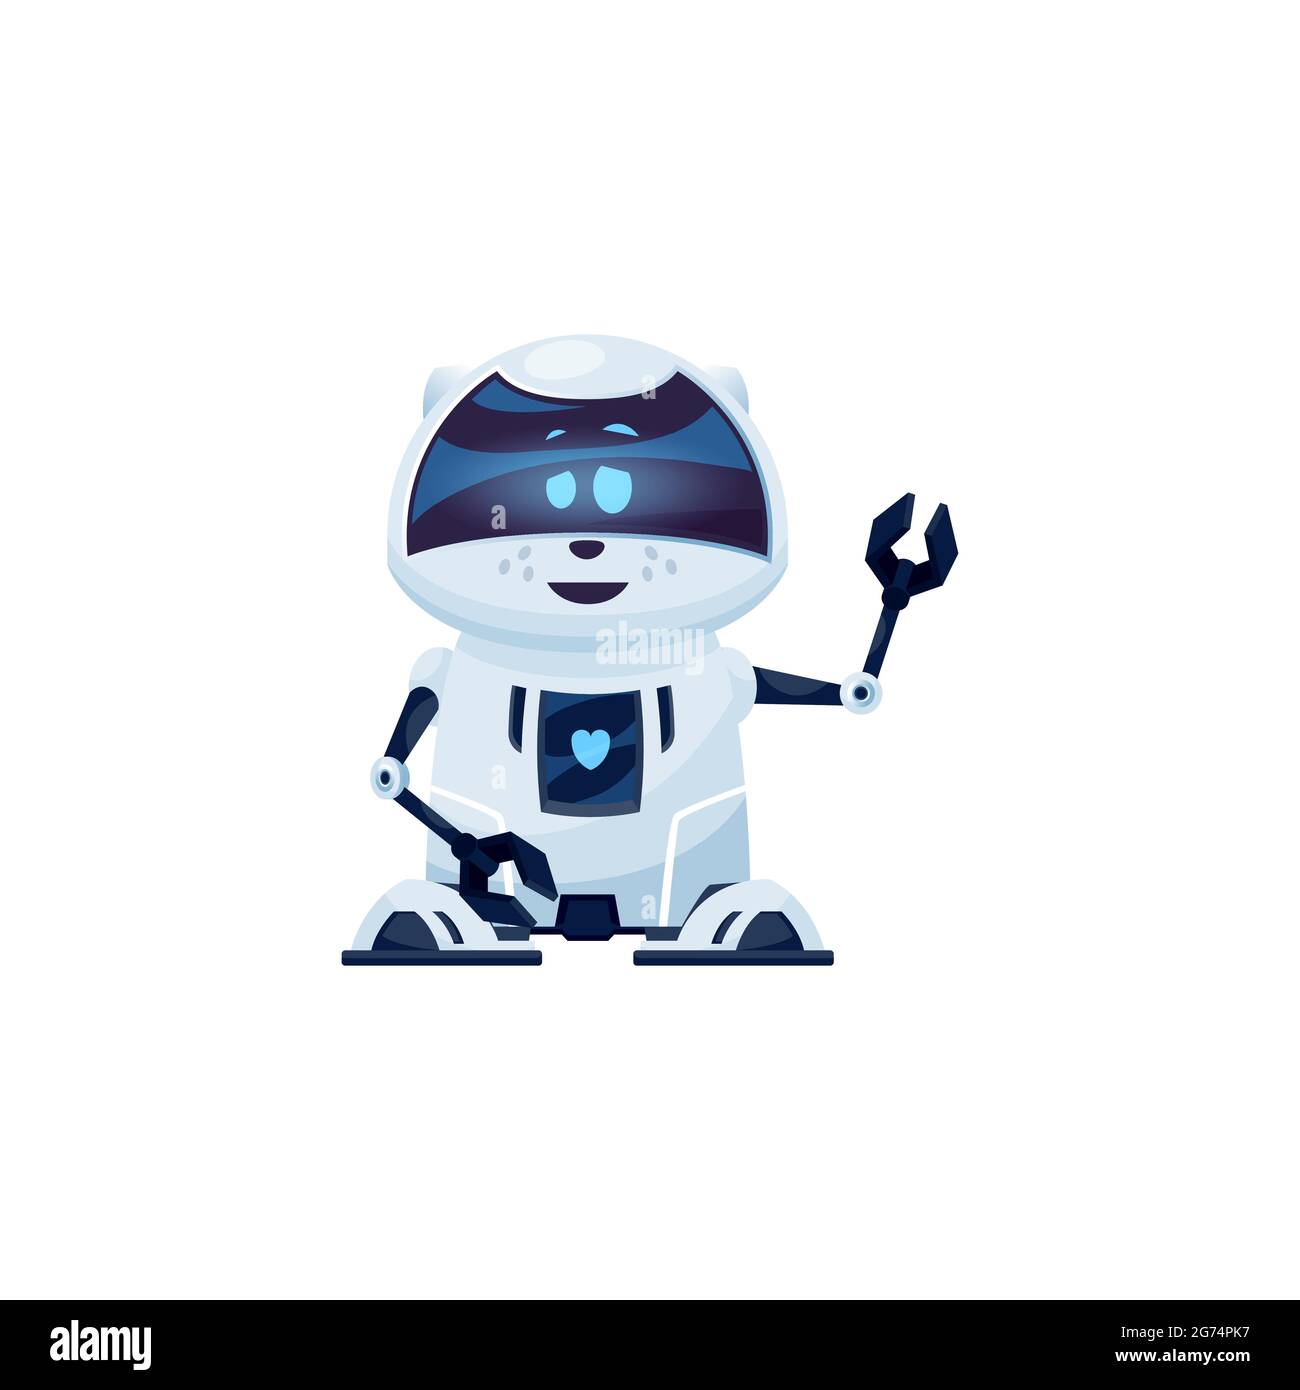 Dessin Anime Robot Chat Vecteur Cyborg Personnage Jouet Ou Bot Technologie De L Intelligence Artificielle Sympathique Animal De Compagnie De Robot Humanise Ai Avec Lueur Numerique Muzzle An Image Vectorielle Stock Alamy